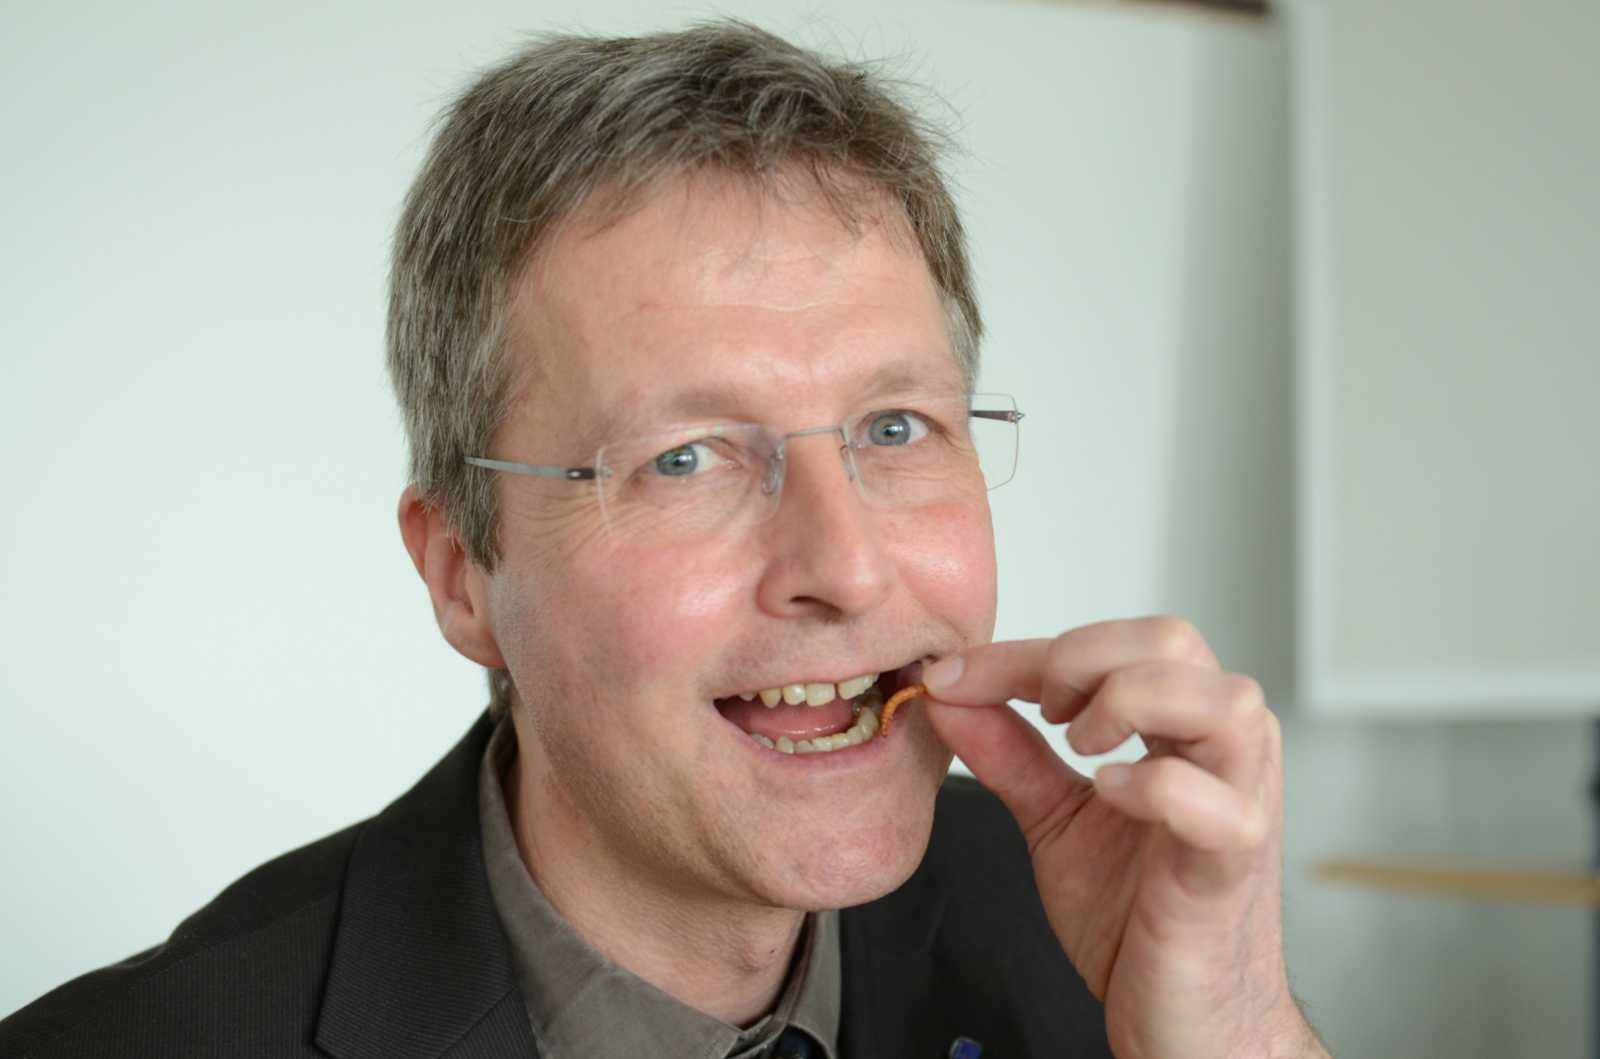 Prof. Dr. Guido Ritter forscht an der FH Münster unter anderem zur Zukunft der Ernährung. Insekten sollten dazugehören, meint der Ernährungswissenschaftler. (Foto: FH Münster/Pressestelle)